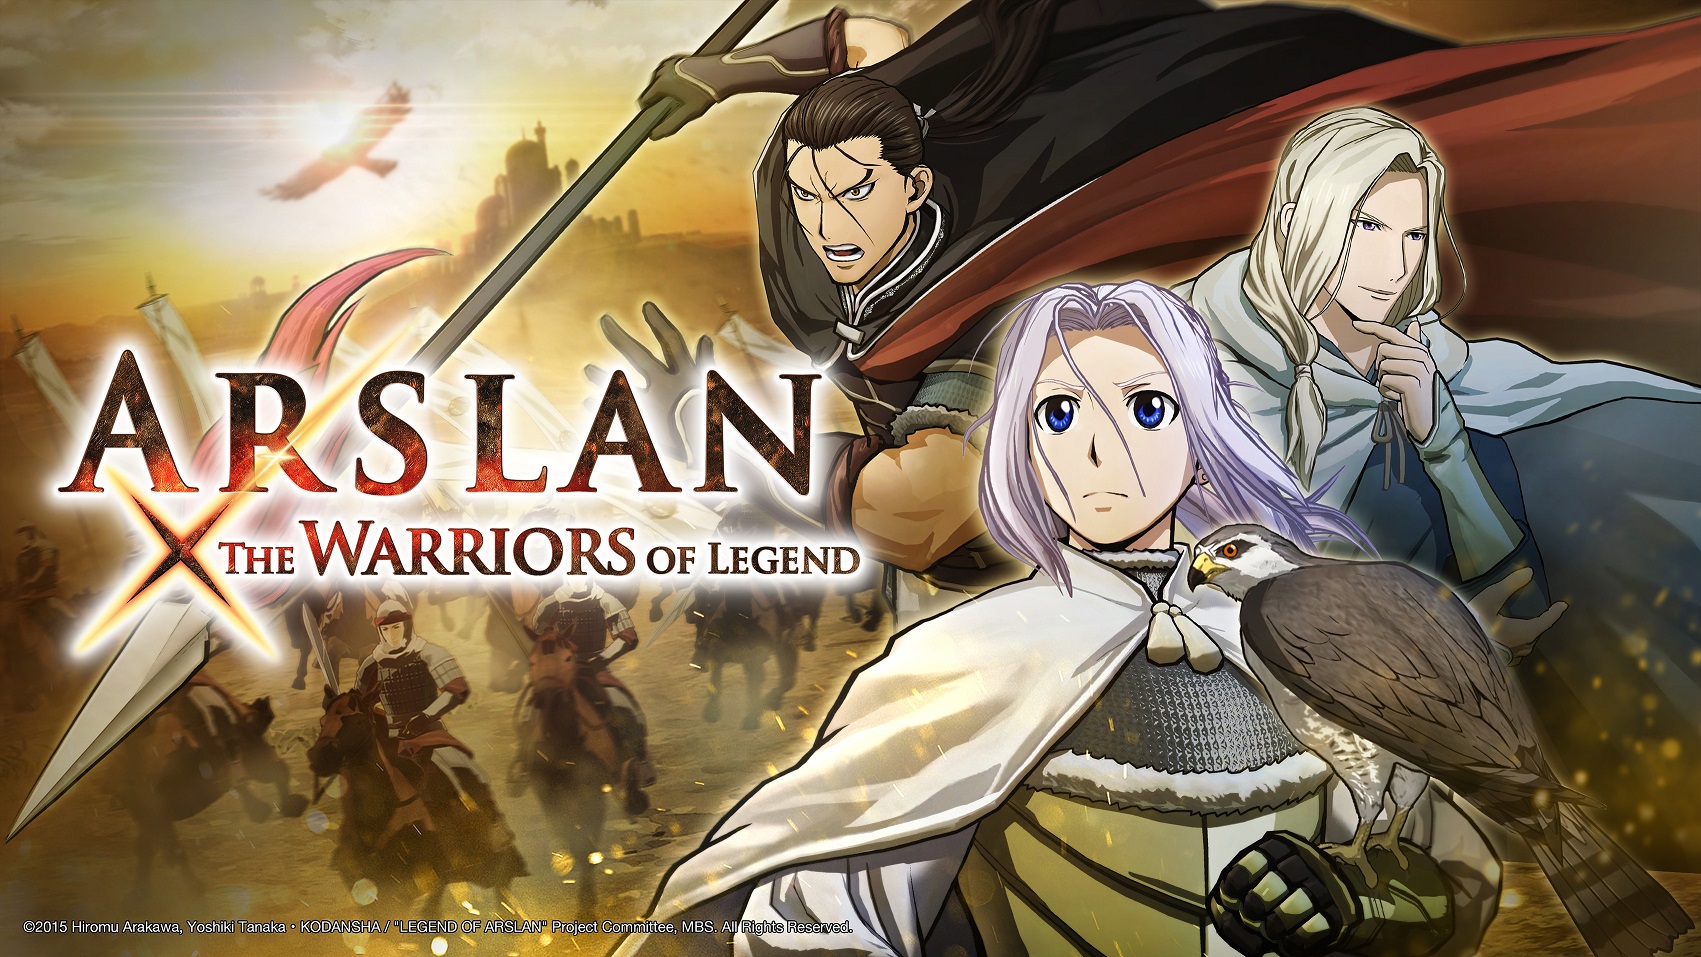 Arslan: The Warriors of Legend – Hands On